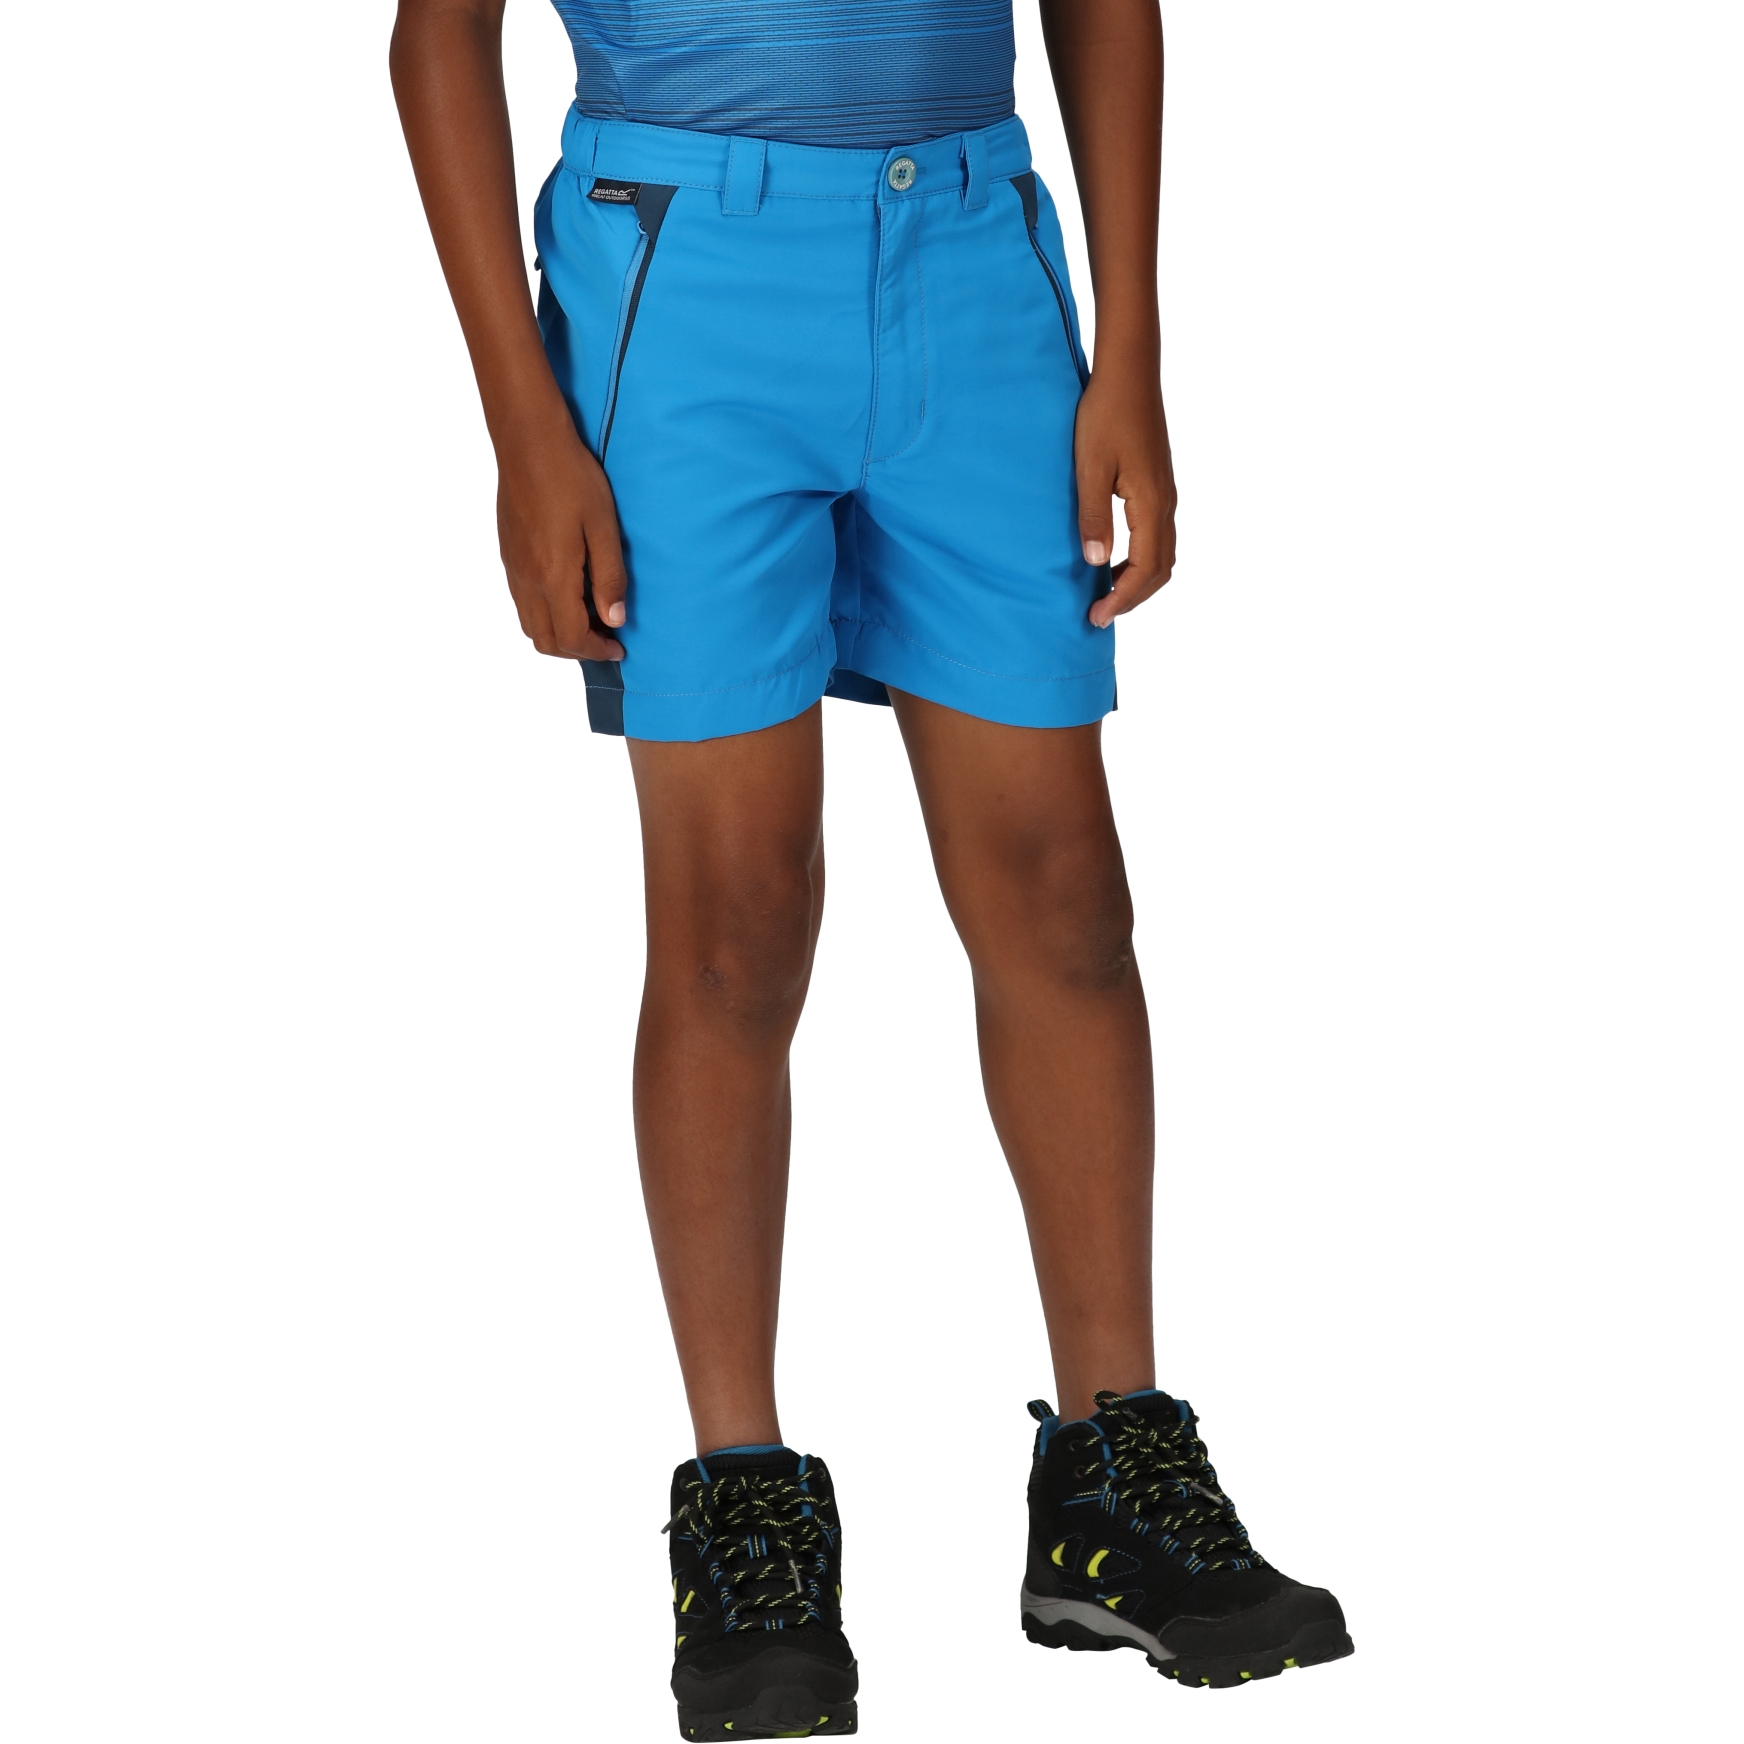 Produktbild von Regatta Sorcer Mountain Shorts III Kinder - Indigo Blue/Blue Wing DHE